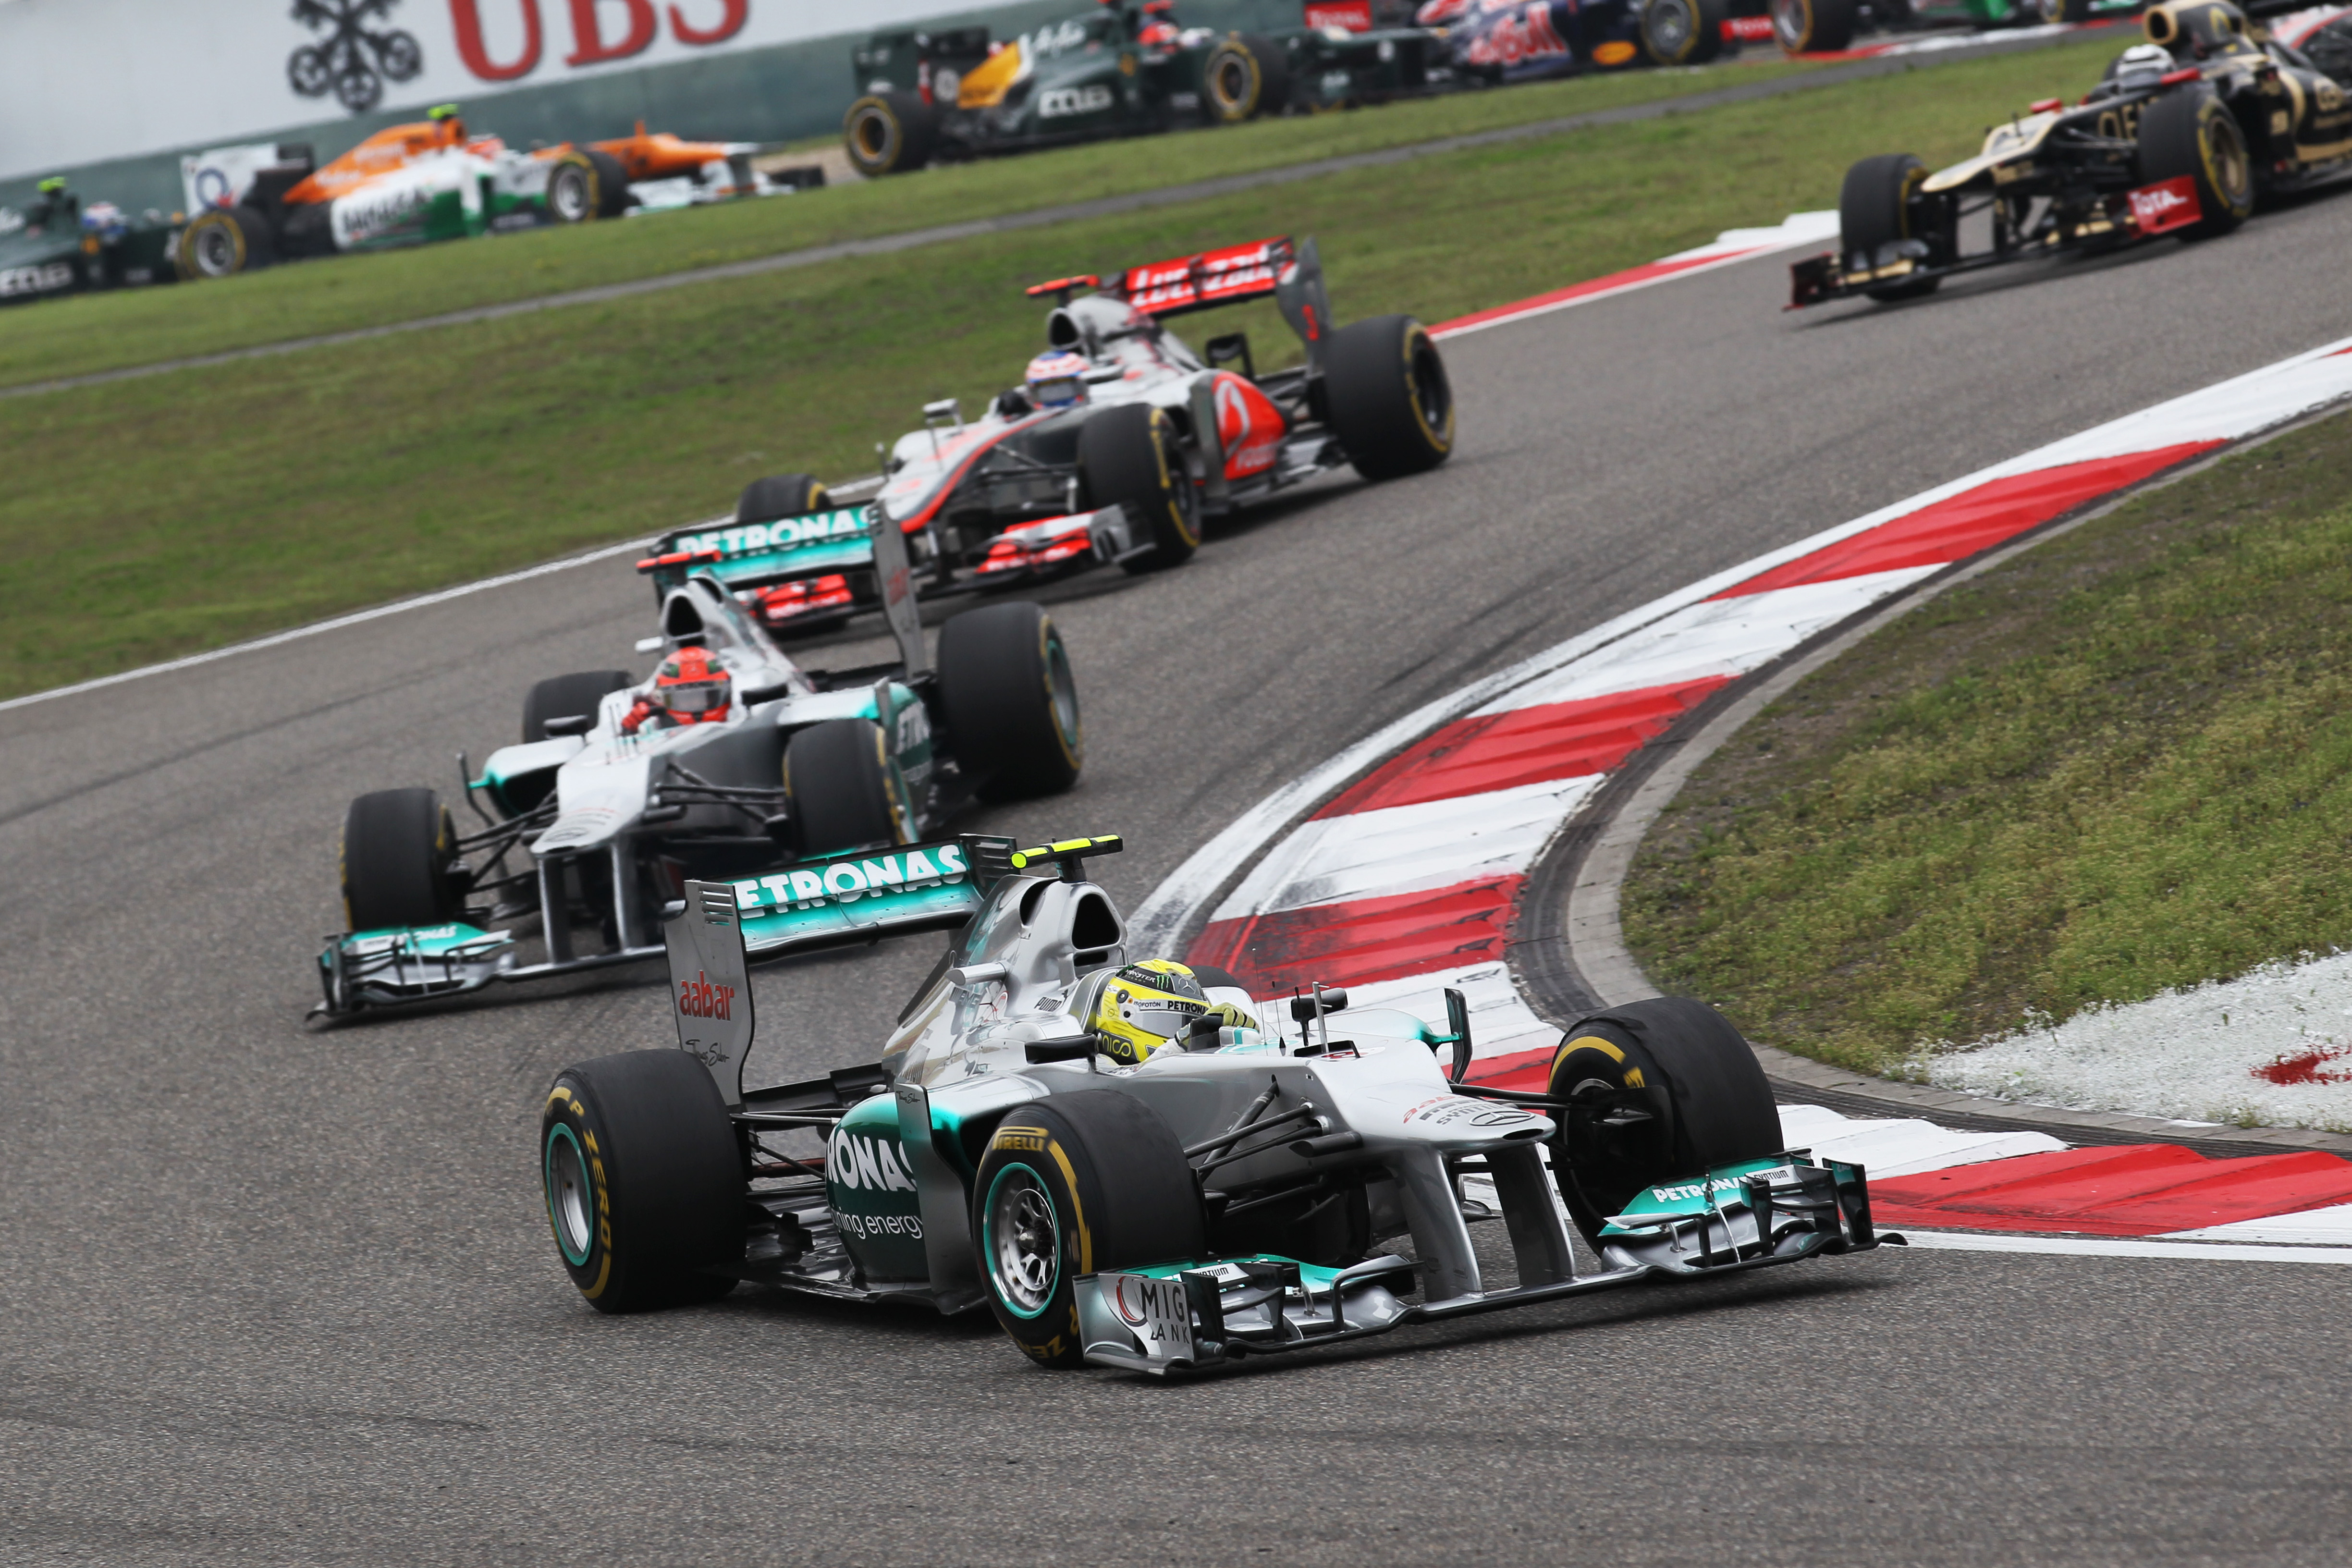 Race: Rosberg wint zijn eerste Grand Prix